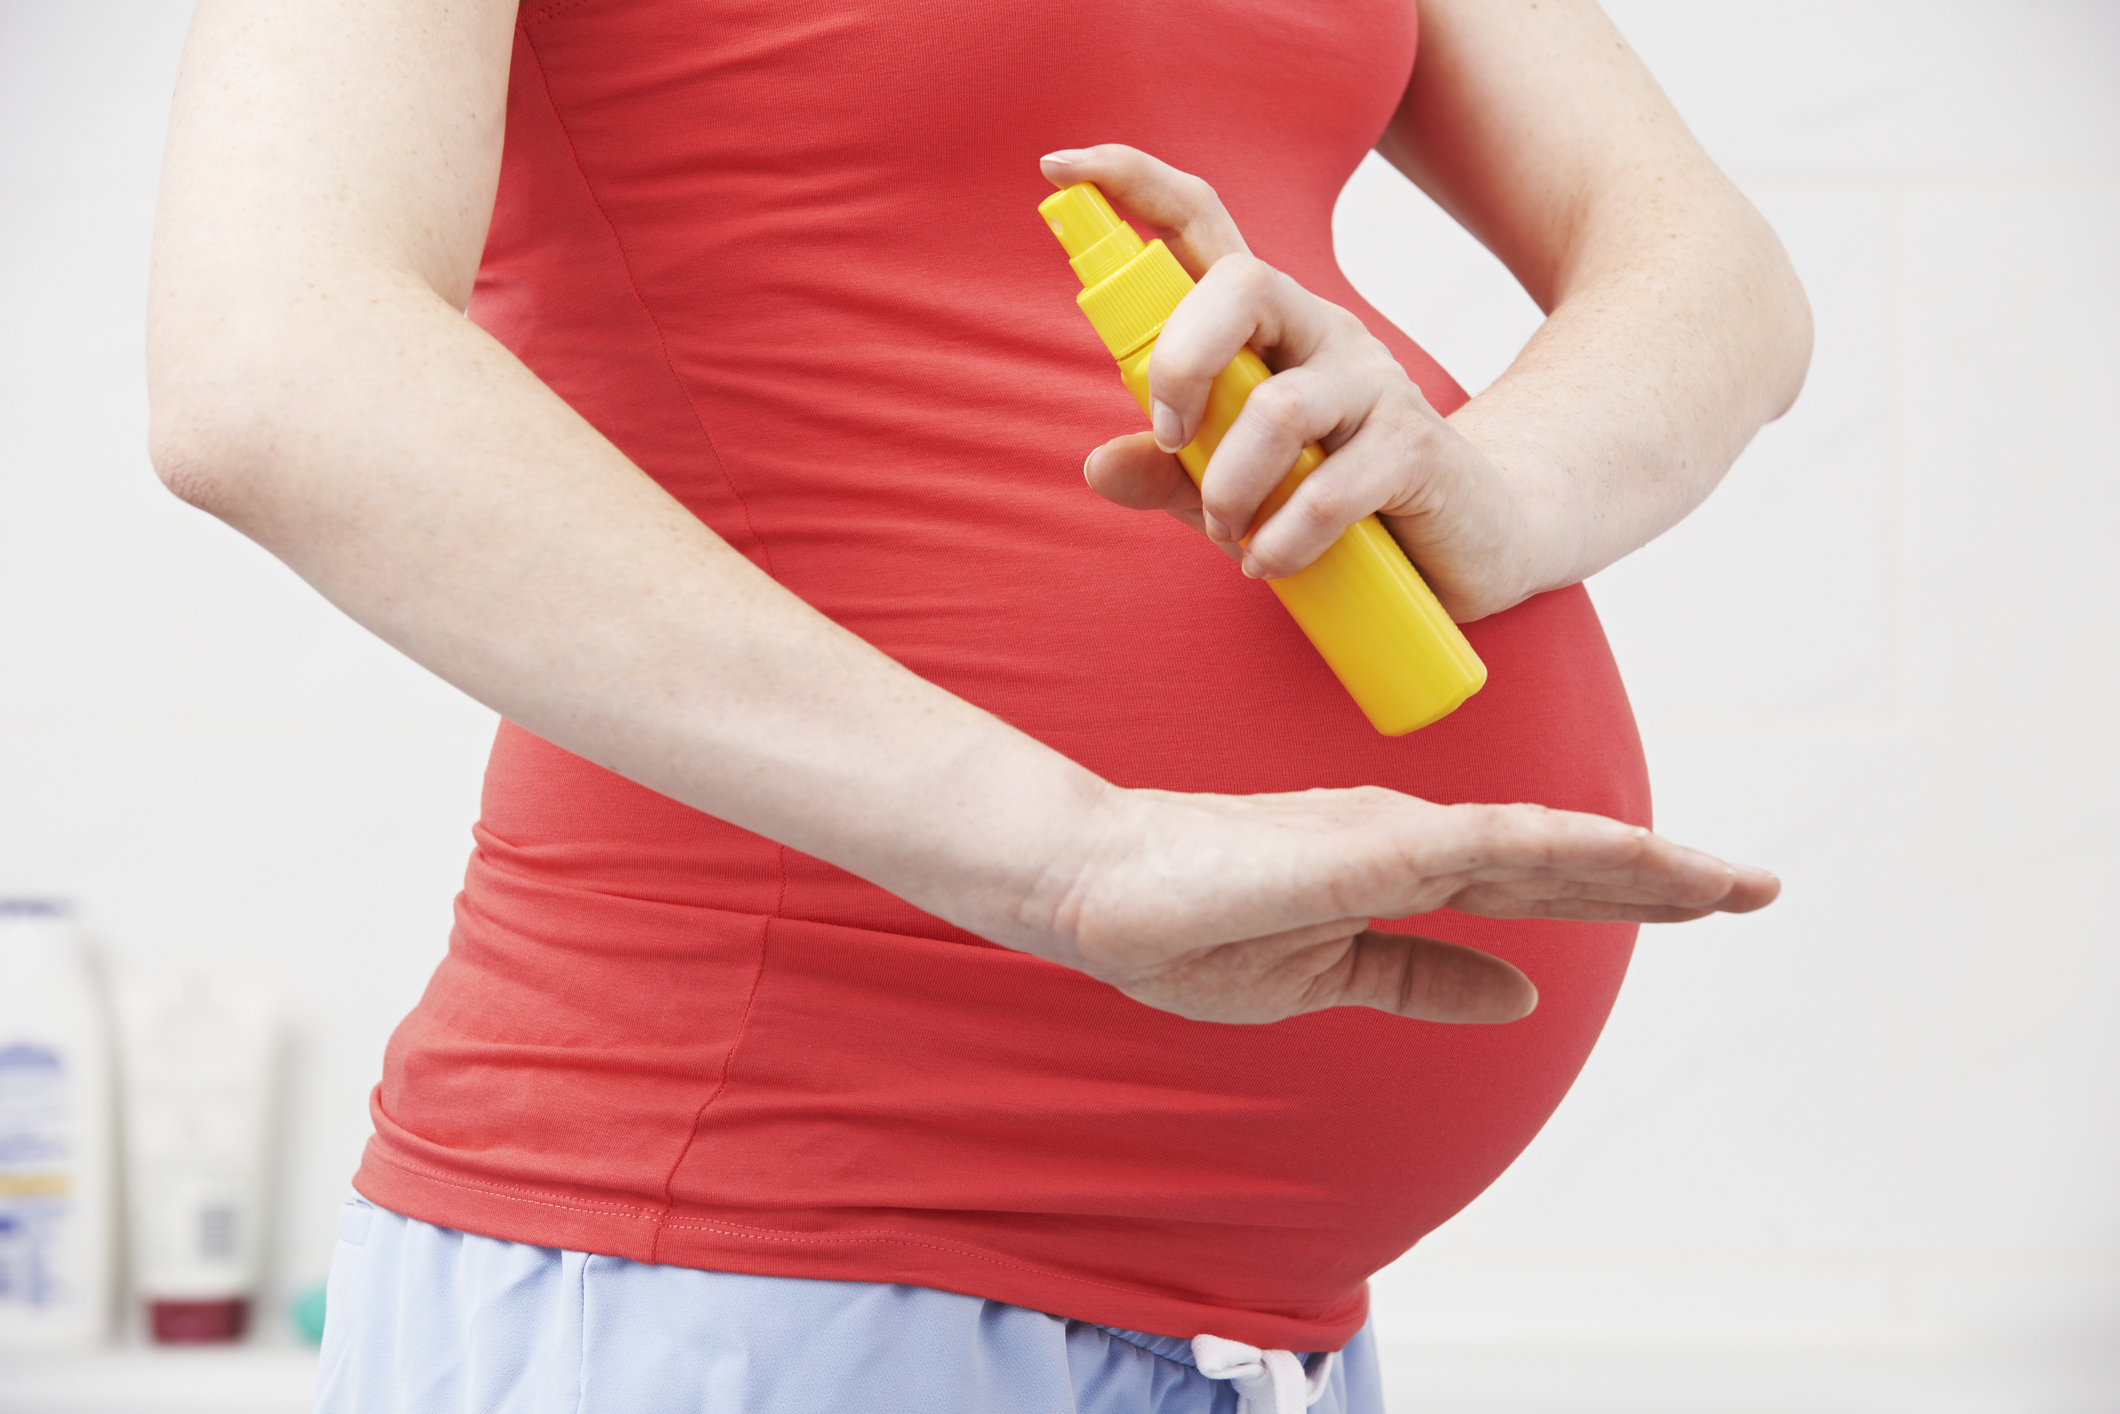 Mulher grávida aplicando repelente. Na imagem, aparece do peito até a cintura da mulher de pele branca. Ela veste uma camiseta vermelha, segura um frasco amarelo e espirra o produto em um dos braços.